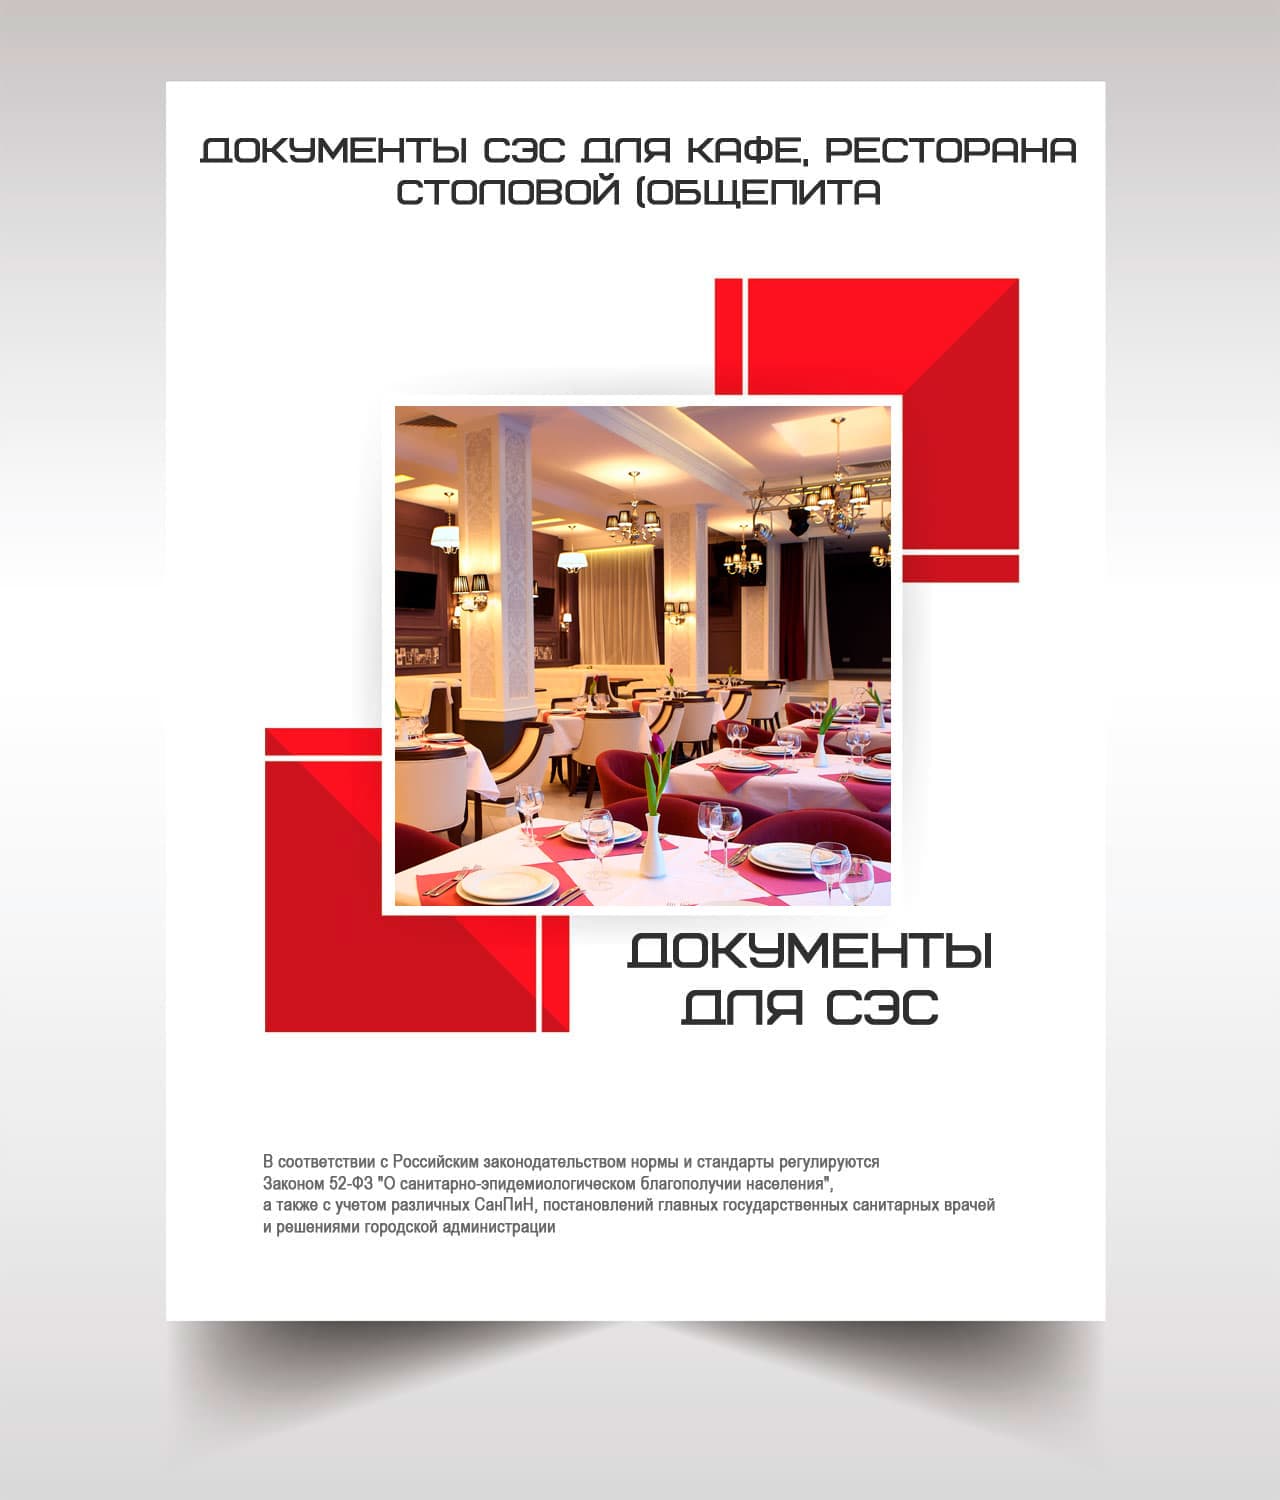 Документы для кафе, ресторана, столовой, общепита в Санкт-Петербурге